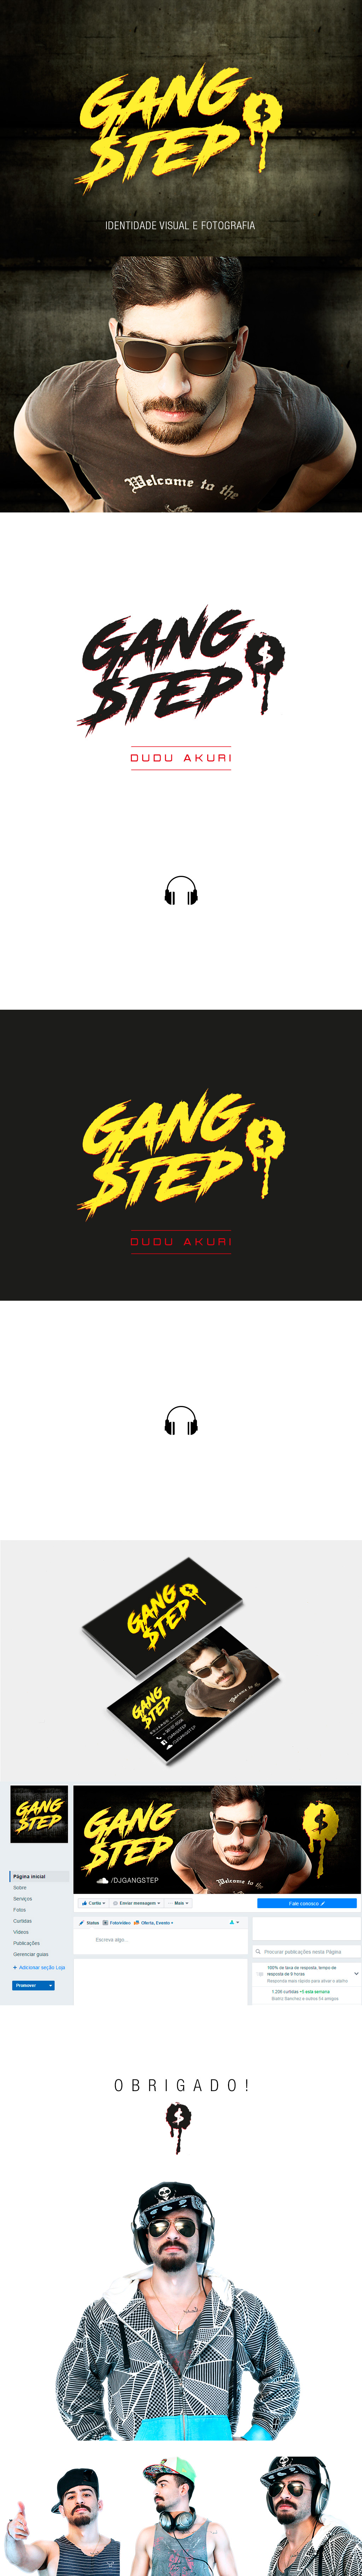 design jvg design JVG GANG STEP gang step dj music producer branding 